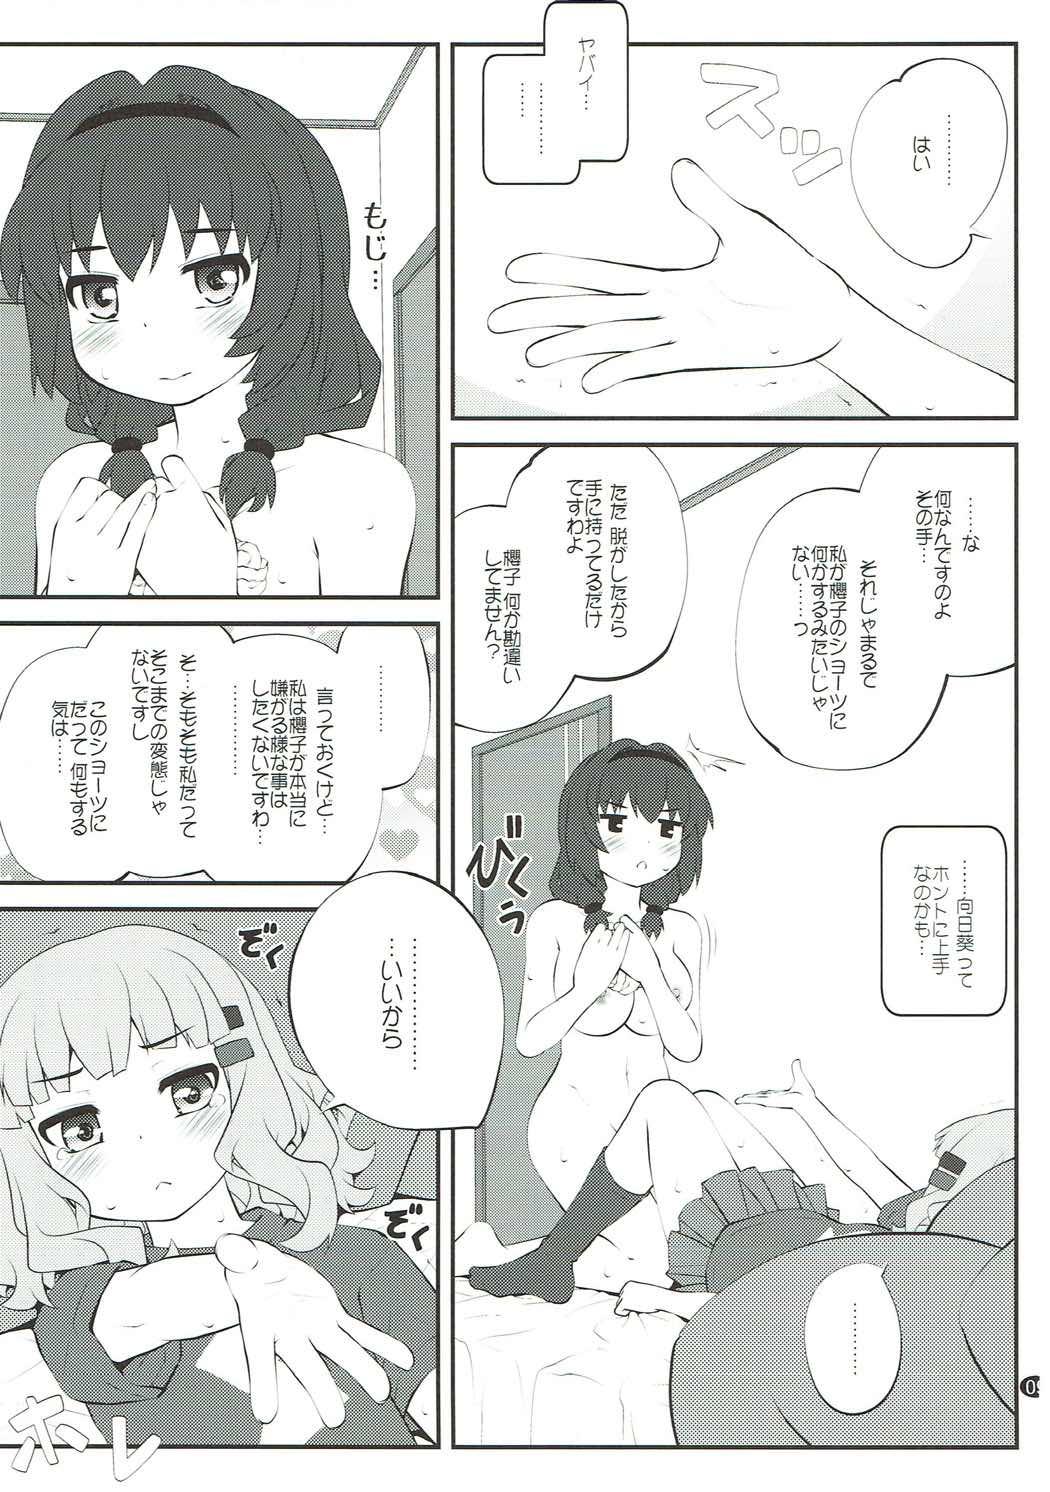 Gaybukkake Himegoto Flowers 12 - Yuruyuri People Having Sex - Page 8